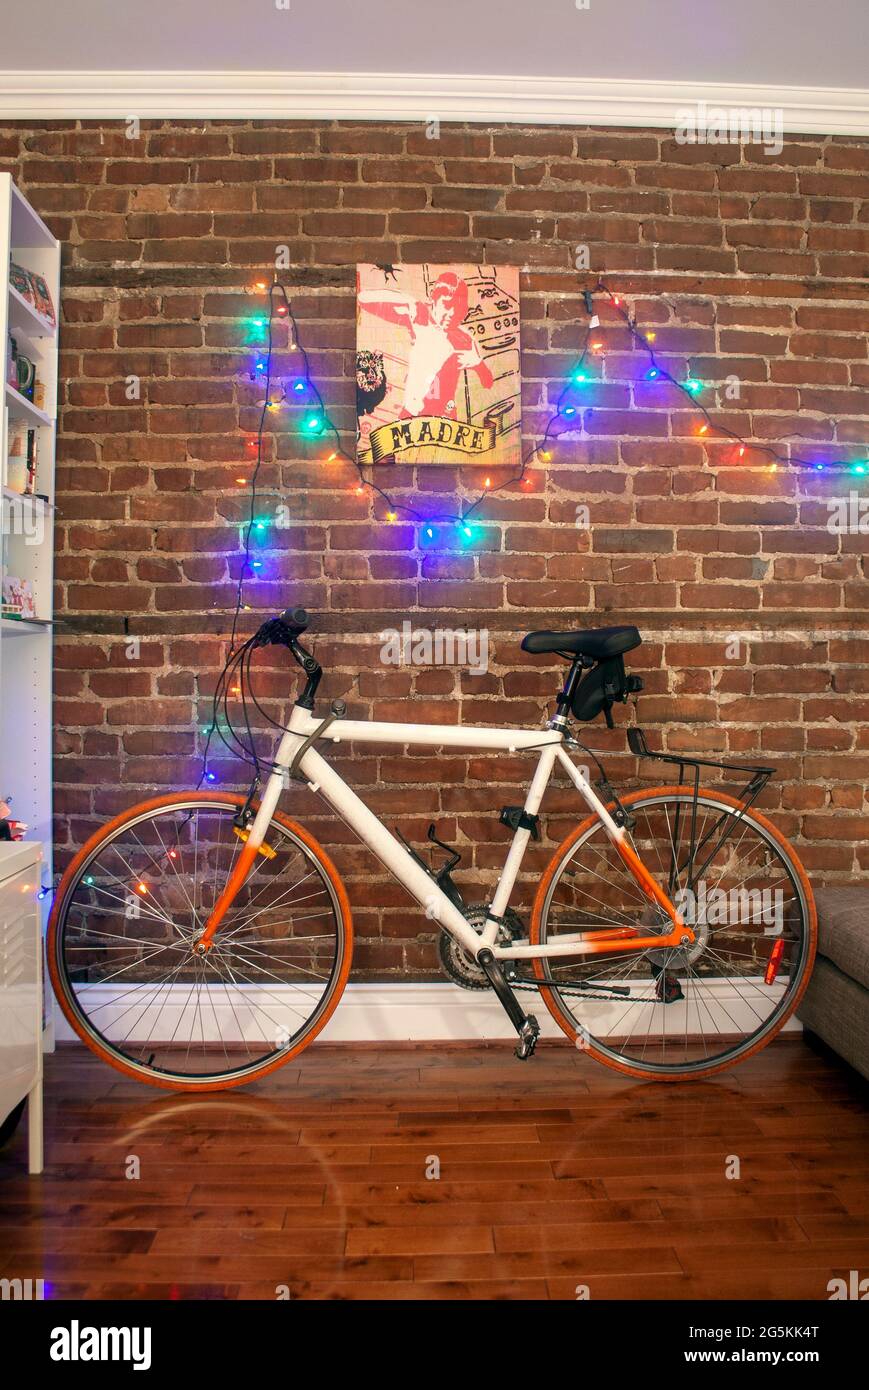 Farbenfrohes Fahrrad, das sich an der Ziegelwand eines Raumes lehnt, mit Weihnachtslichtern, die an der Wand entlang aufgereiht sind Stockfoto